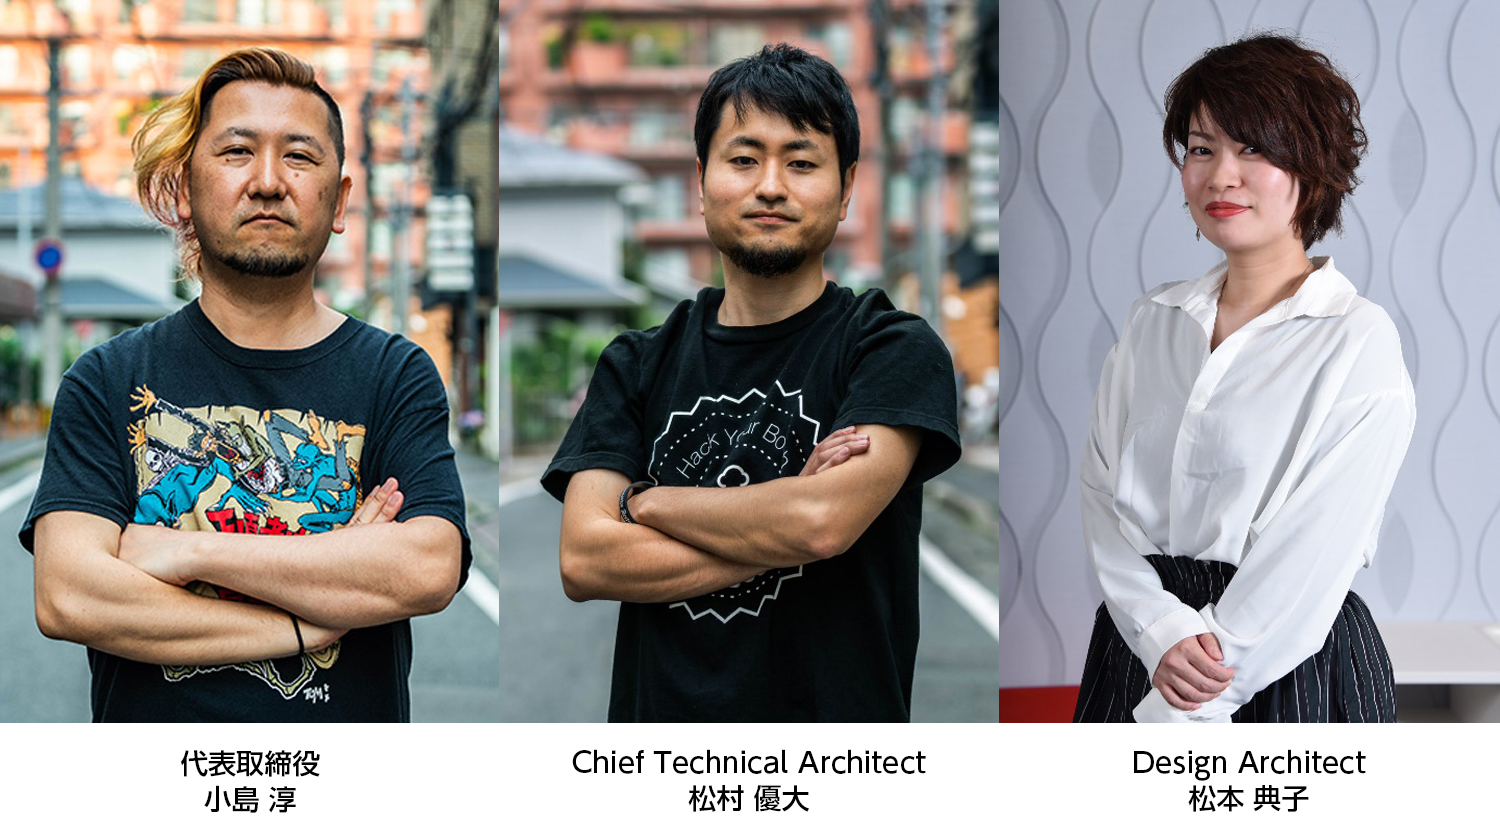 代表取締役の小島淳がMicrosoft Regional Directorに就任。松村優大と松本典子はMicrosoft MVPを再受賞